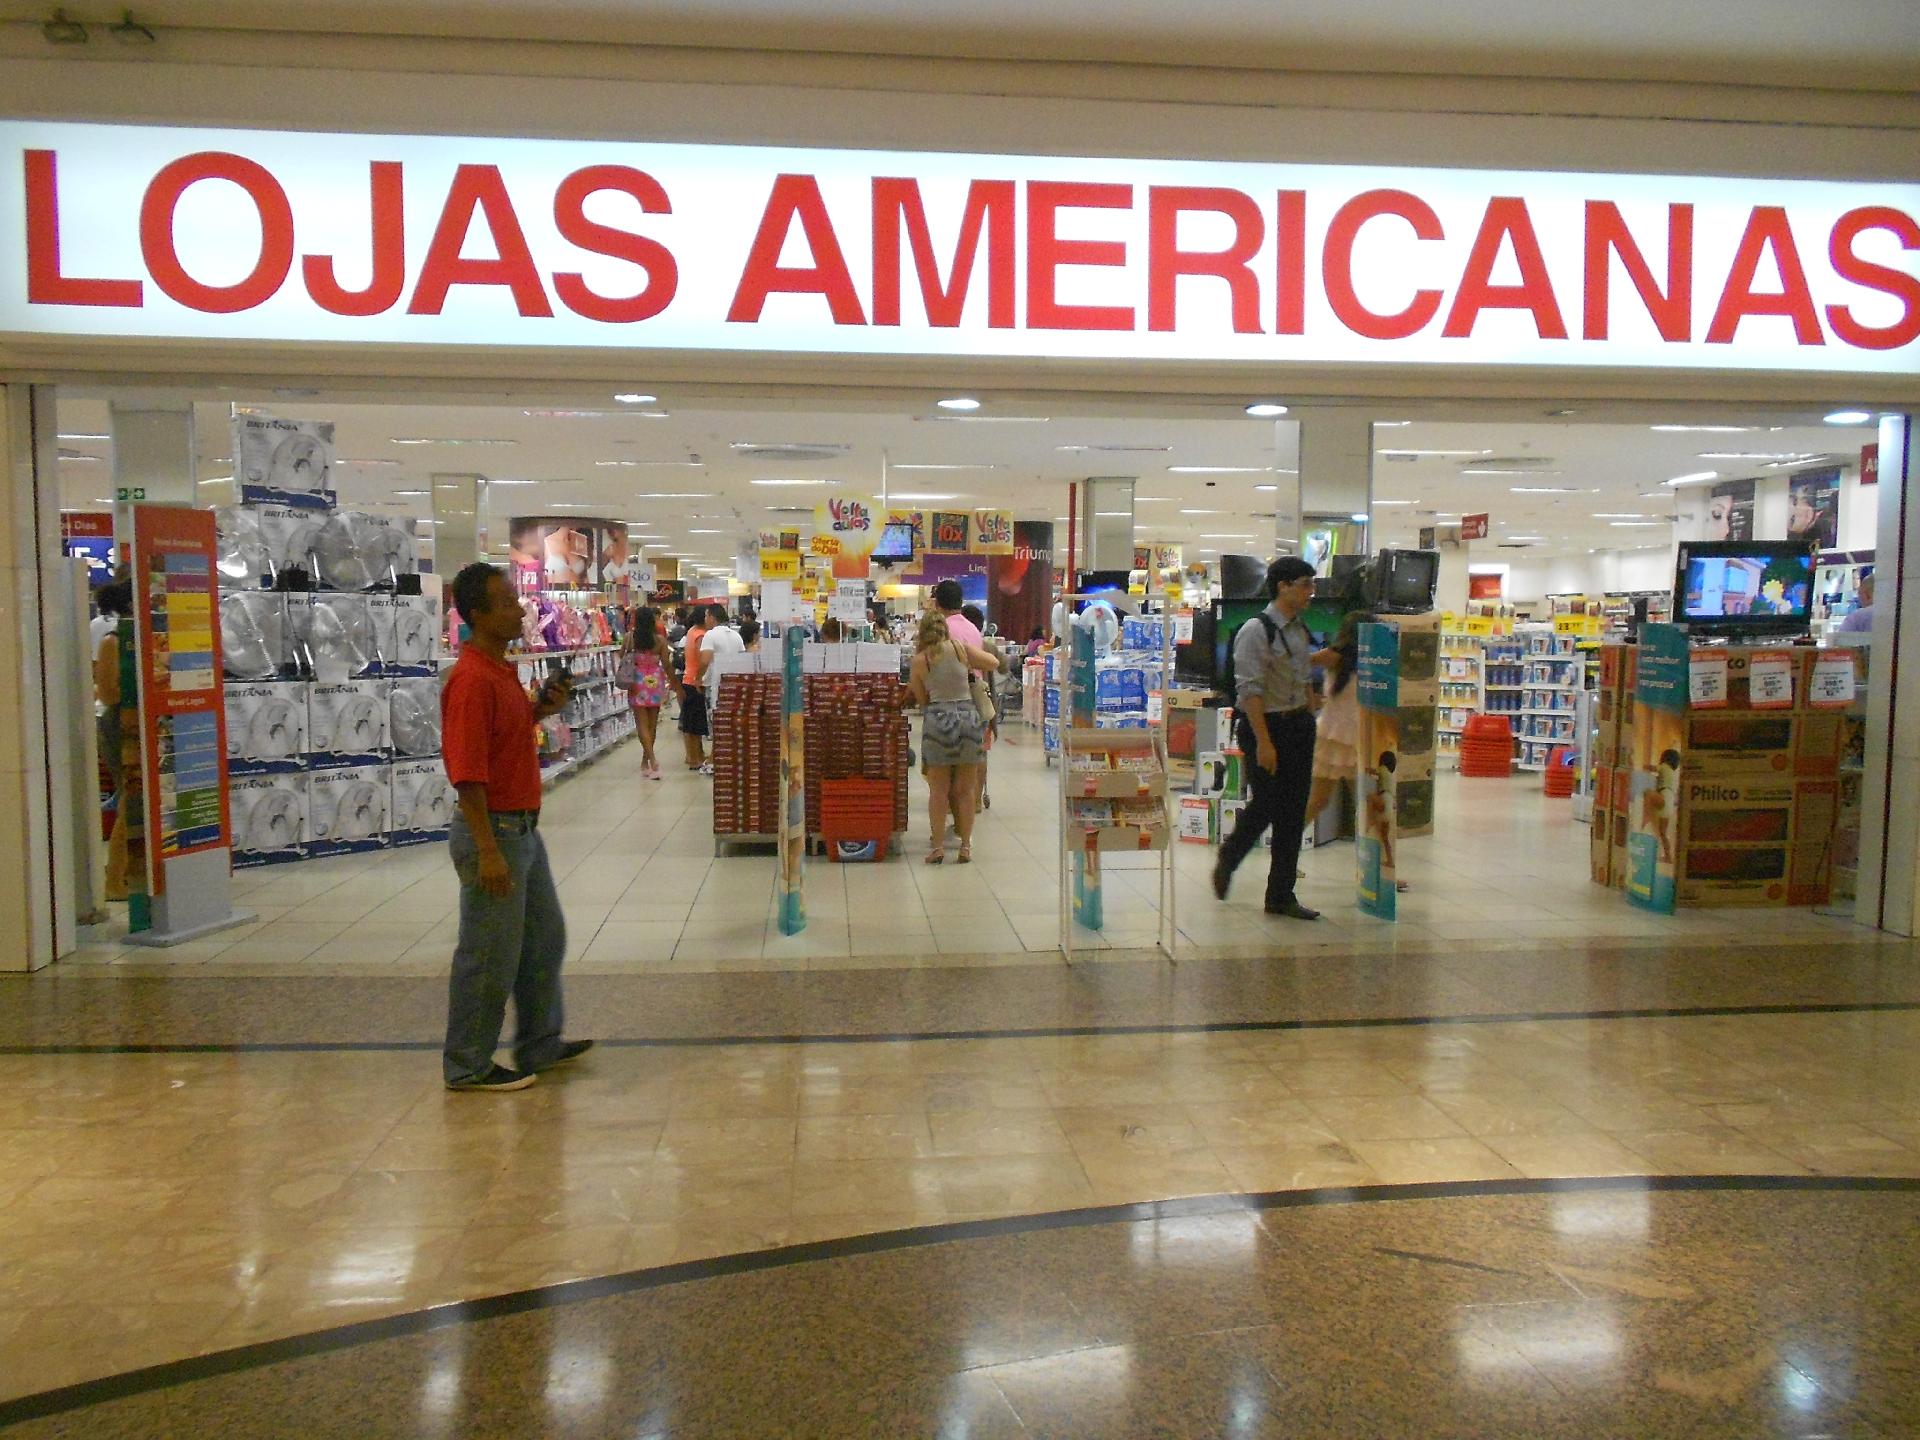 Foto: Fachada das lojas americanas do Rio de Janeiro (RJ).